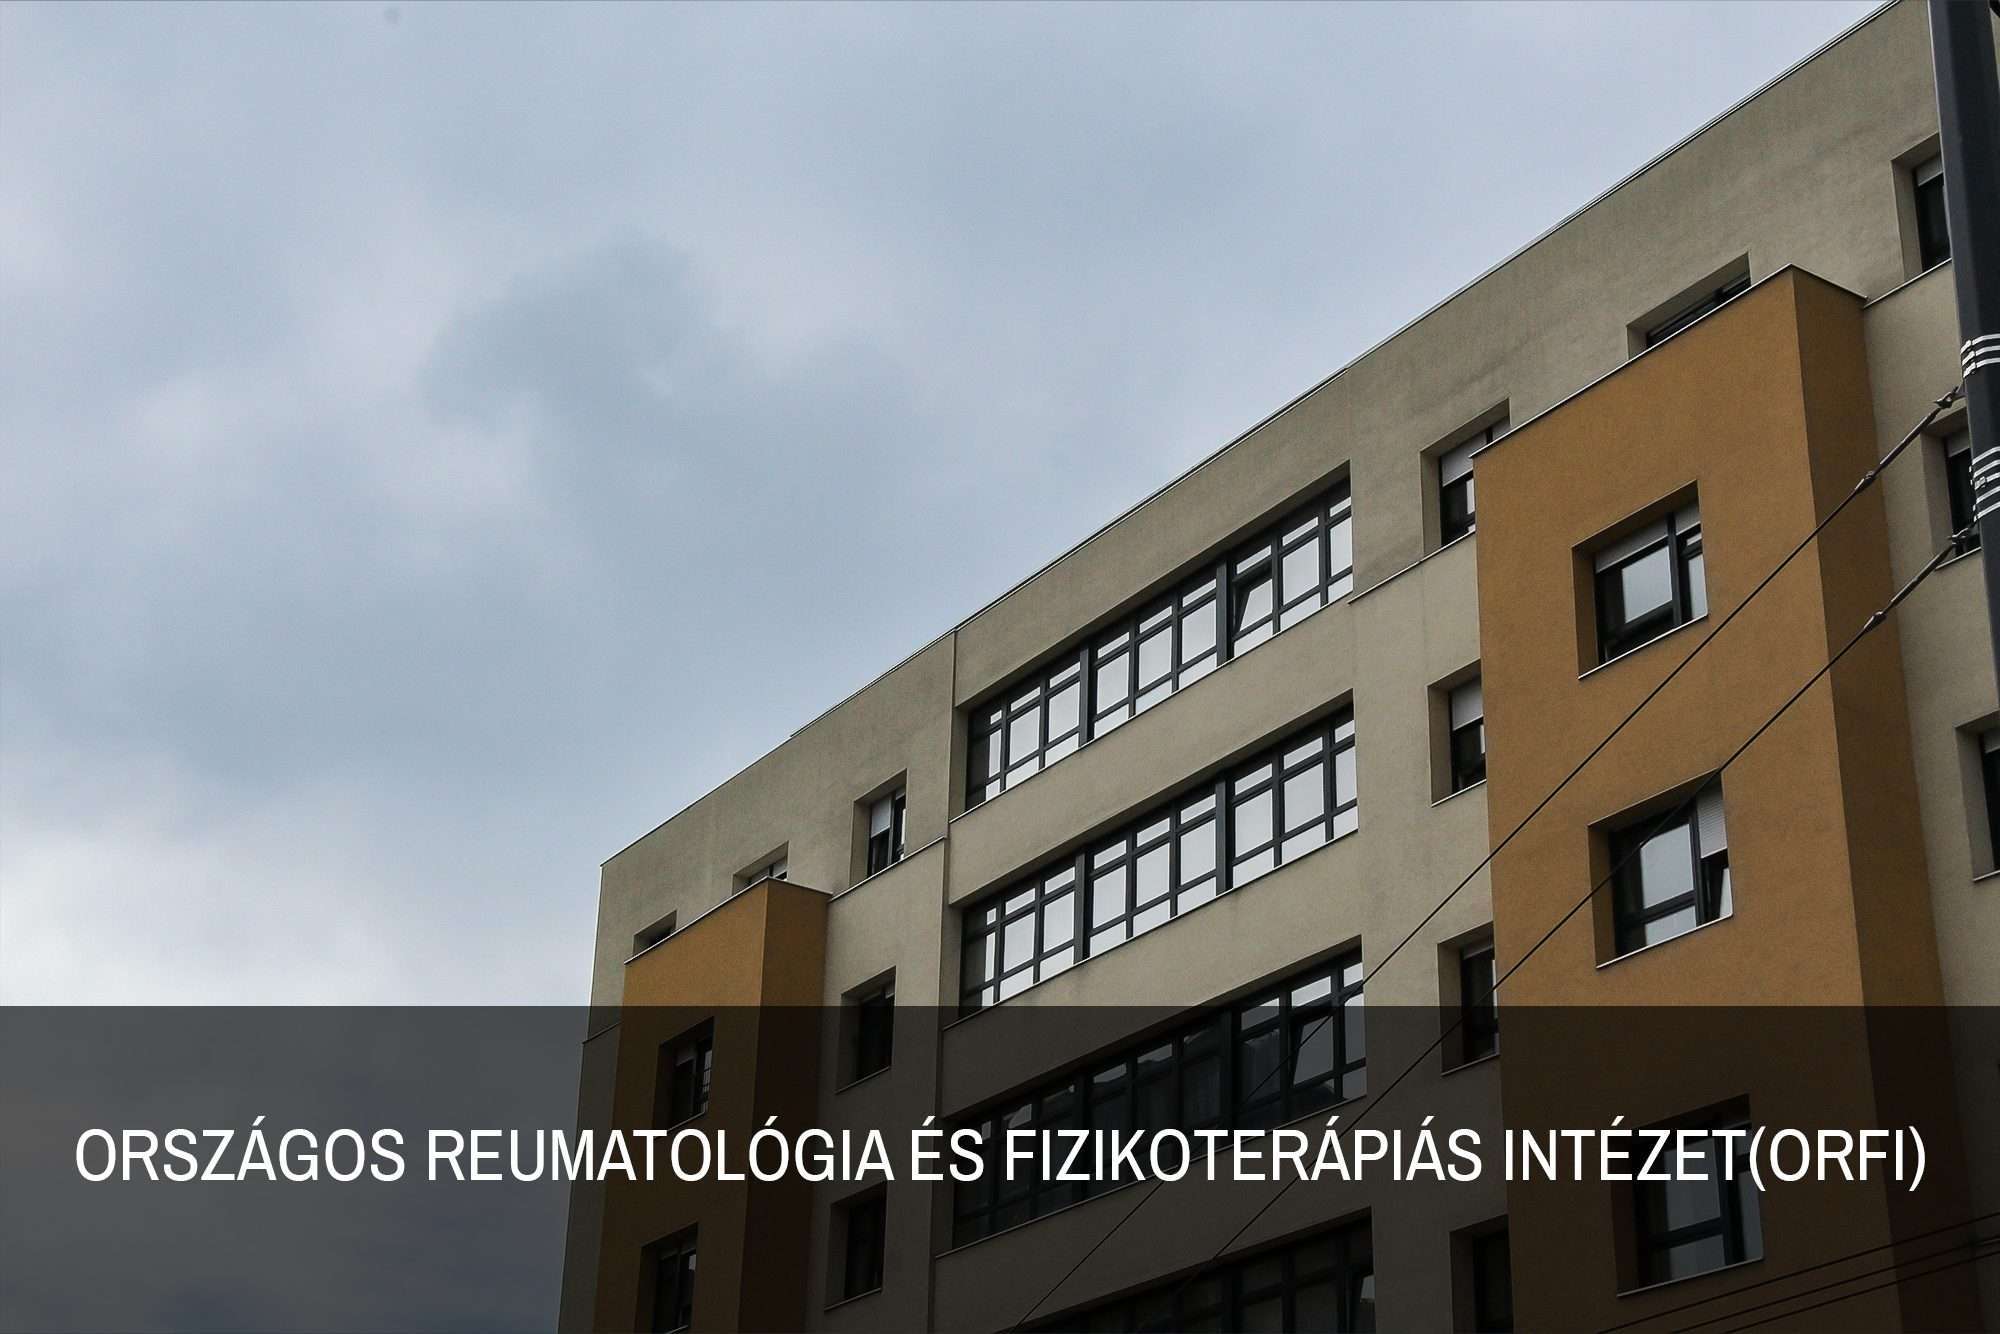 Orszagos-Reumatologia-es-Fizikoterapias-Intezetorfi-alap-referencia.01.jpg